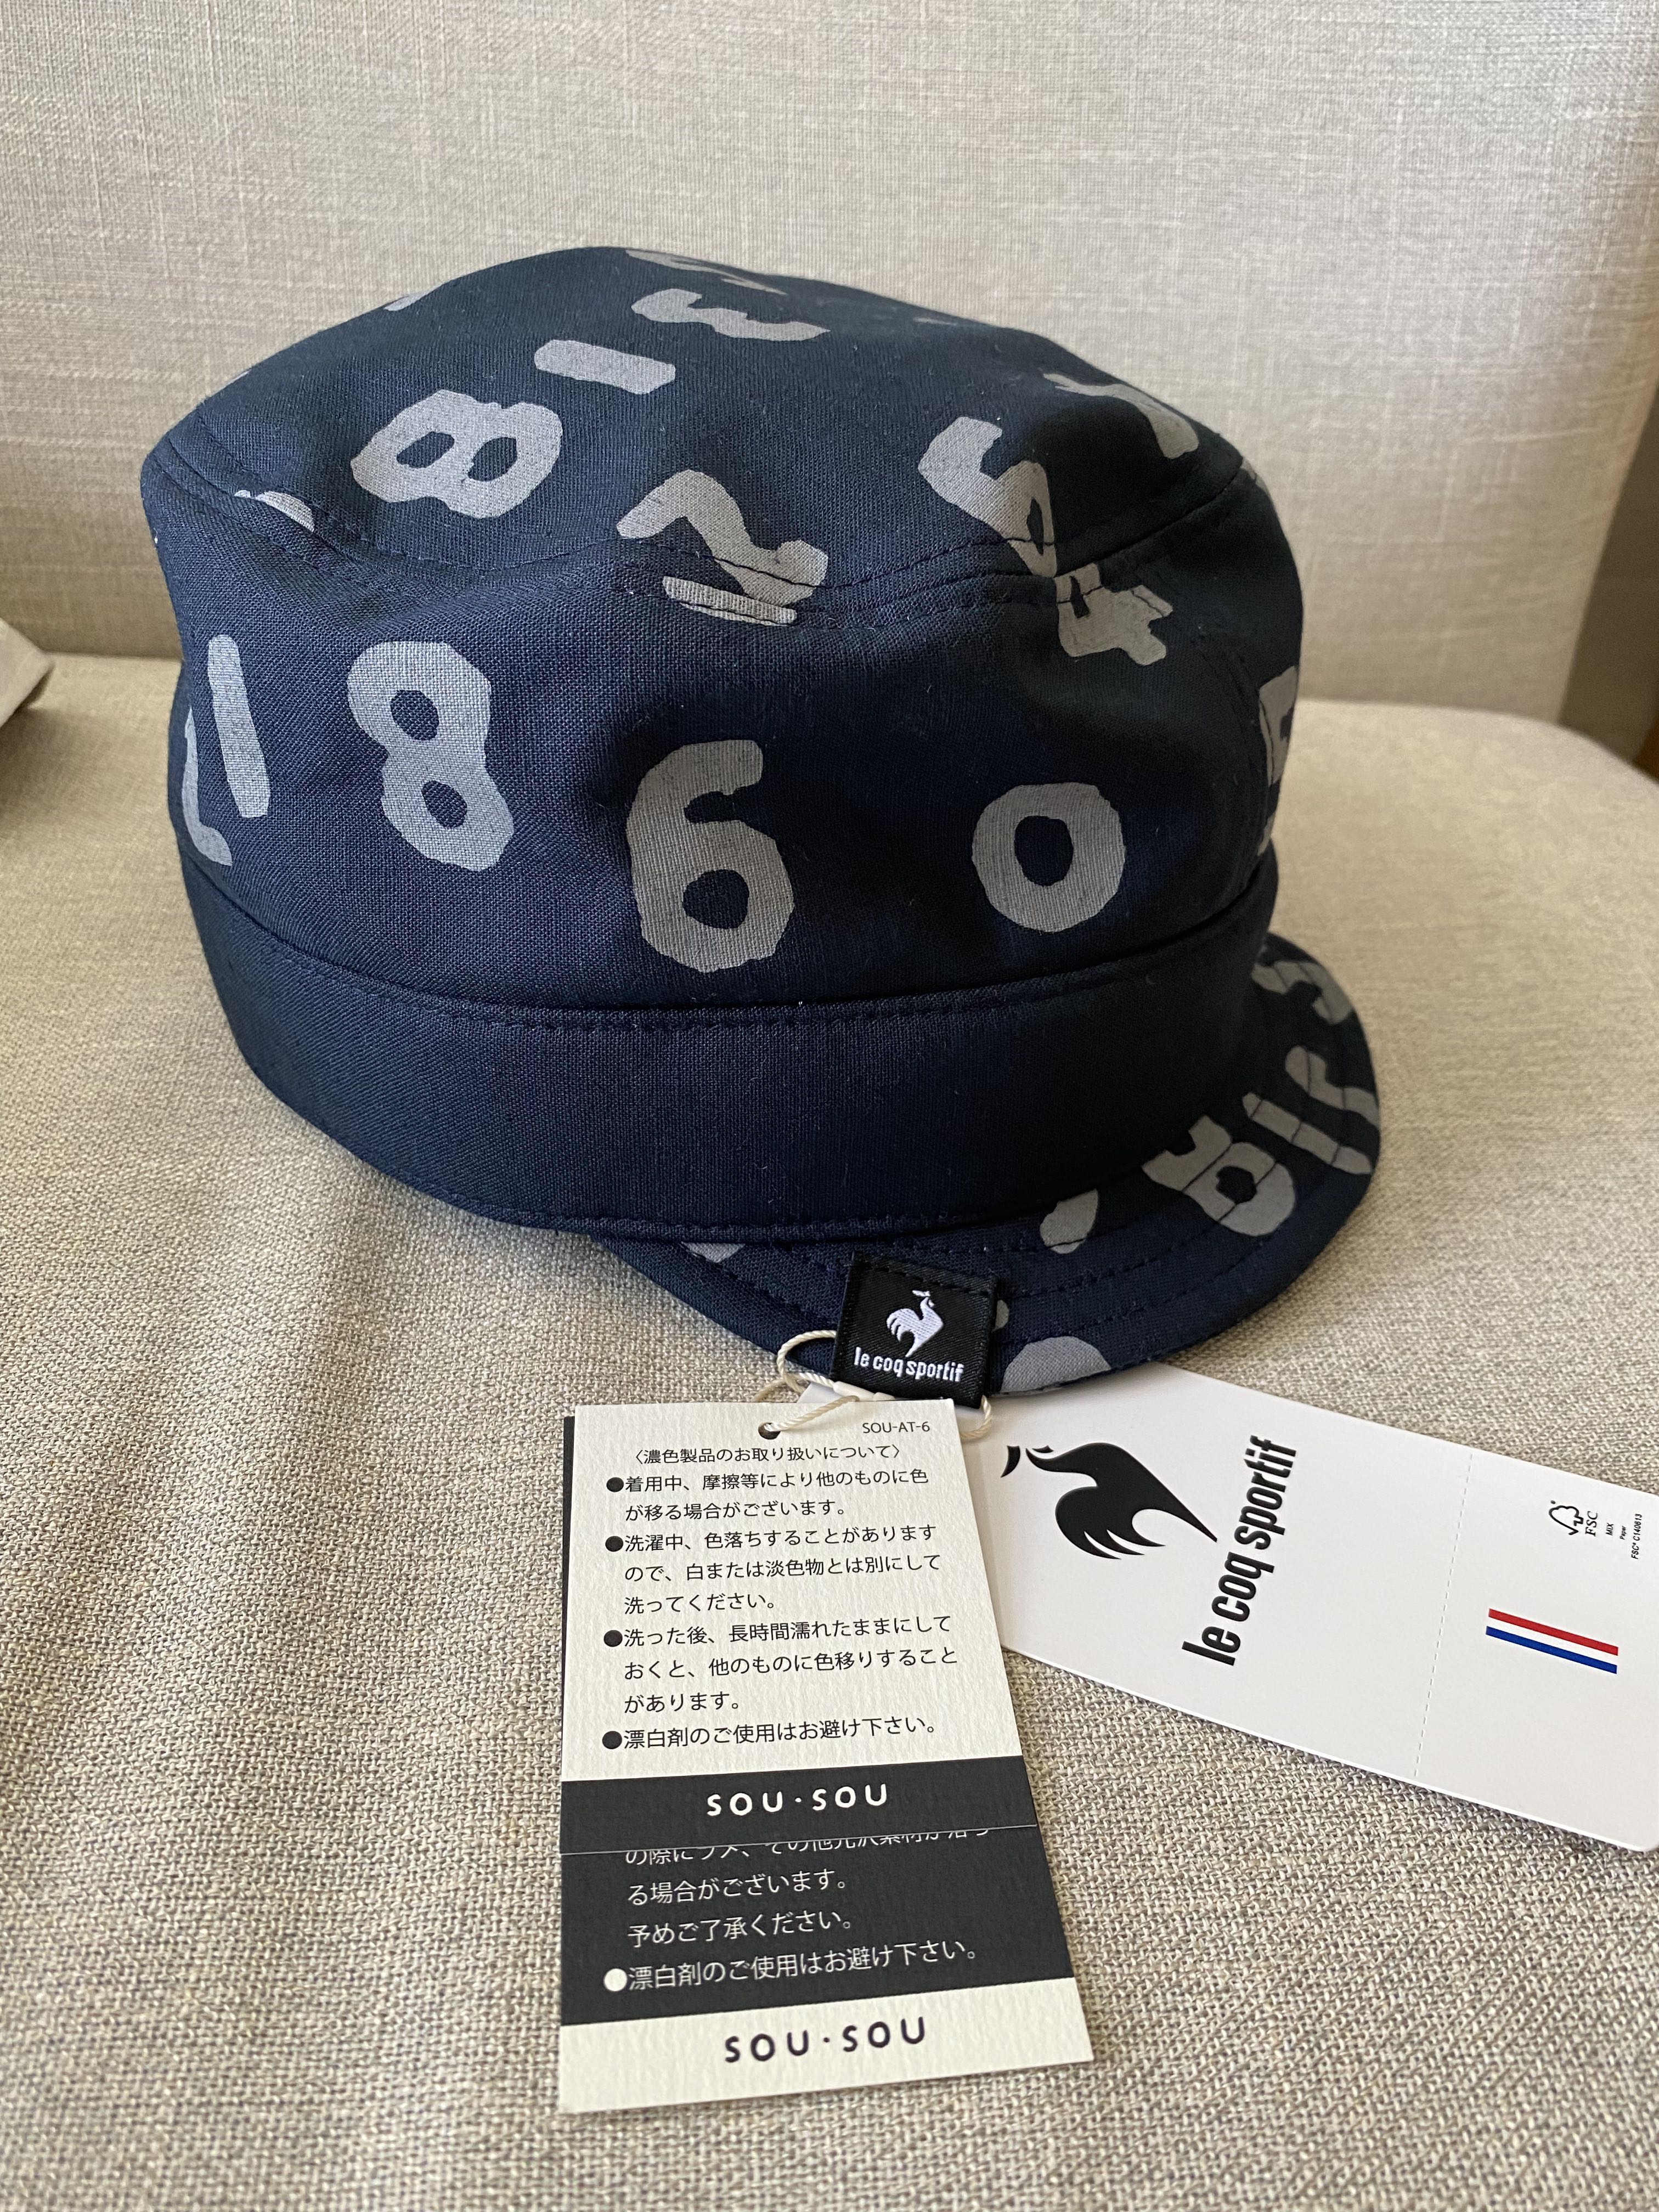 sou sou 帽（日本製）le coq sportif 聯乘, 男裝, 手錶及配件, 棒球帽